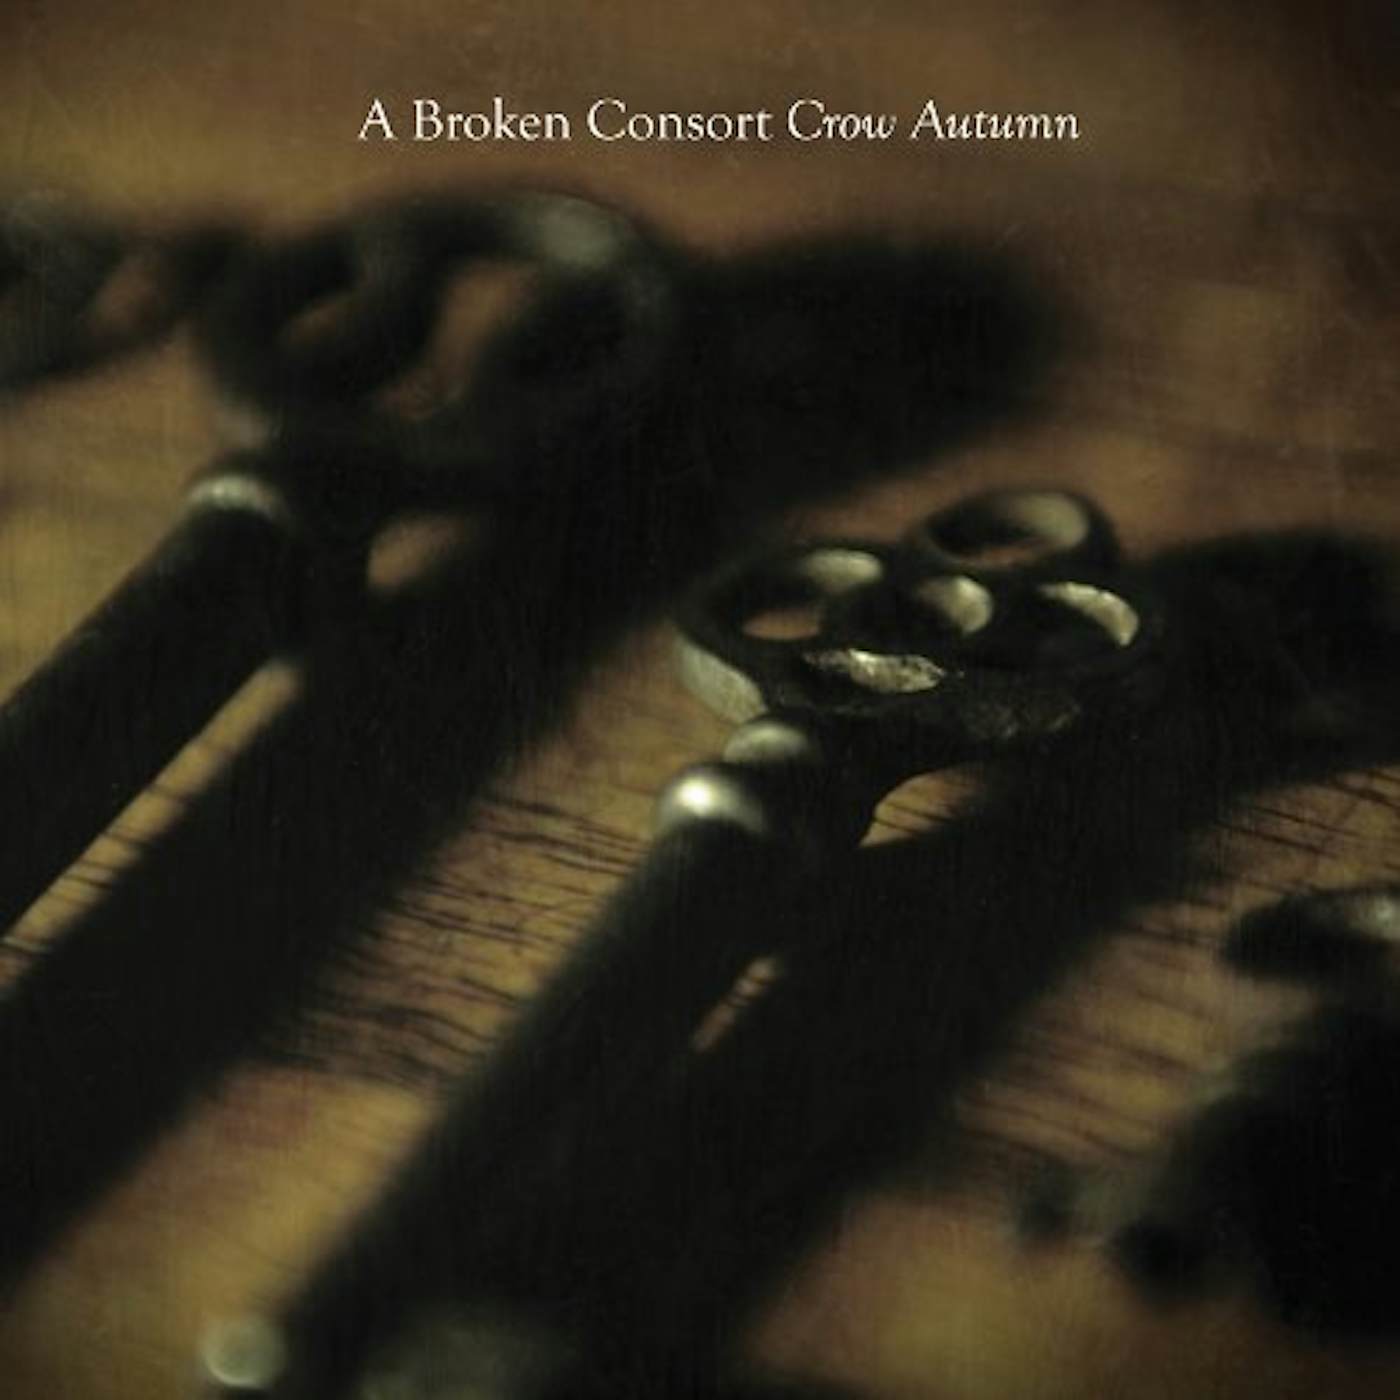 A Broken Consort CROW AUTUMN CD